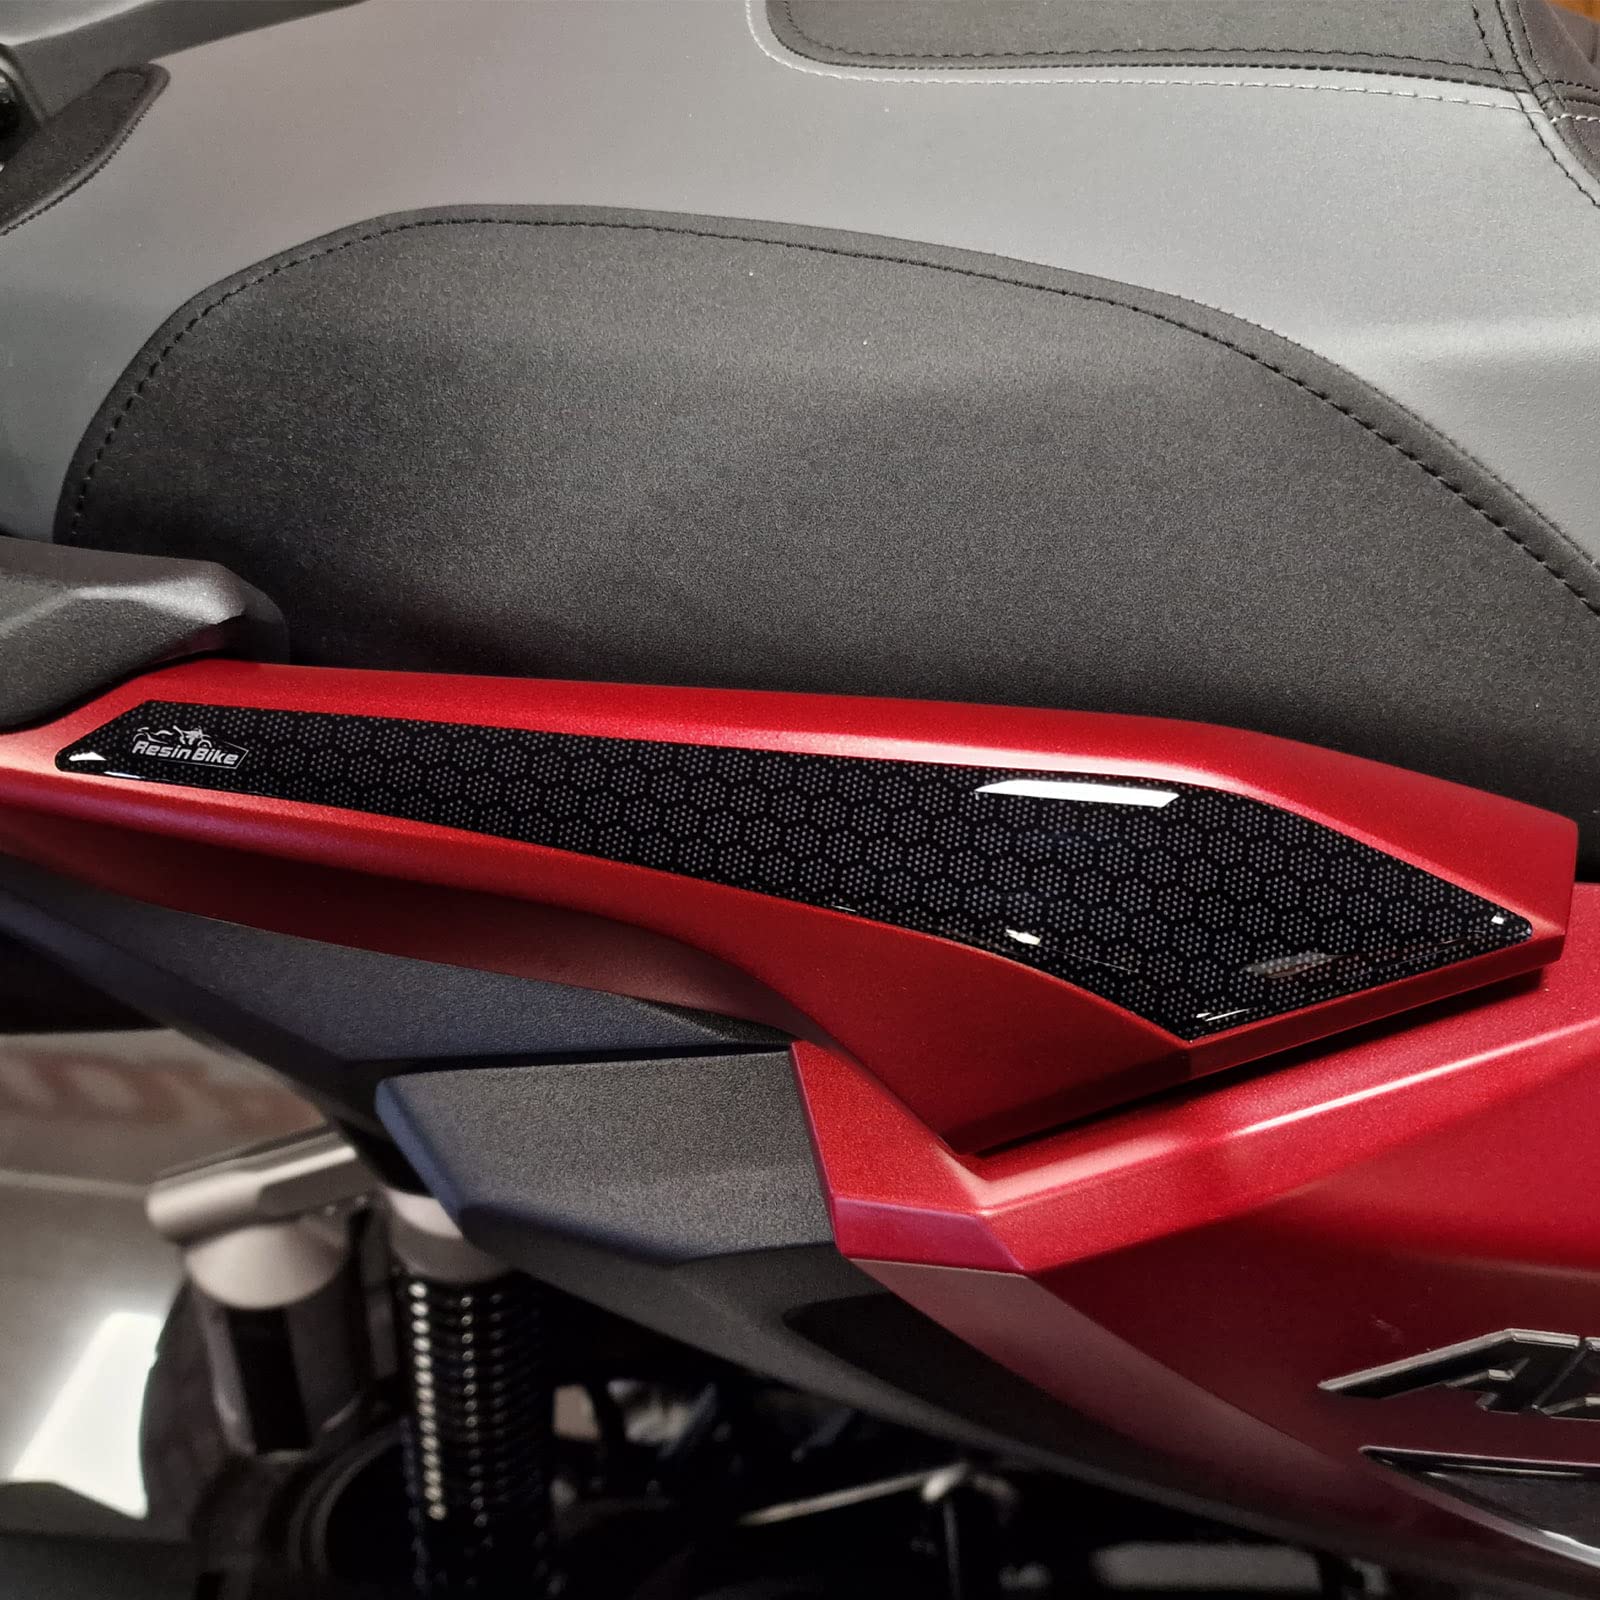 Resin Bike Aufkleber für Motorrad Kompatibel mit Honda ADV 350 2023 2022. Schutz für die Koffergriffe vor Stößen und Kratzern. 3D-Harzklebstoff - Stickers - Made in Italy von Resin Bike